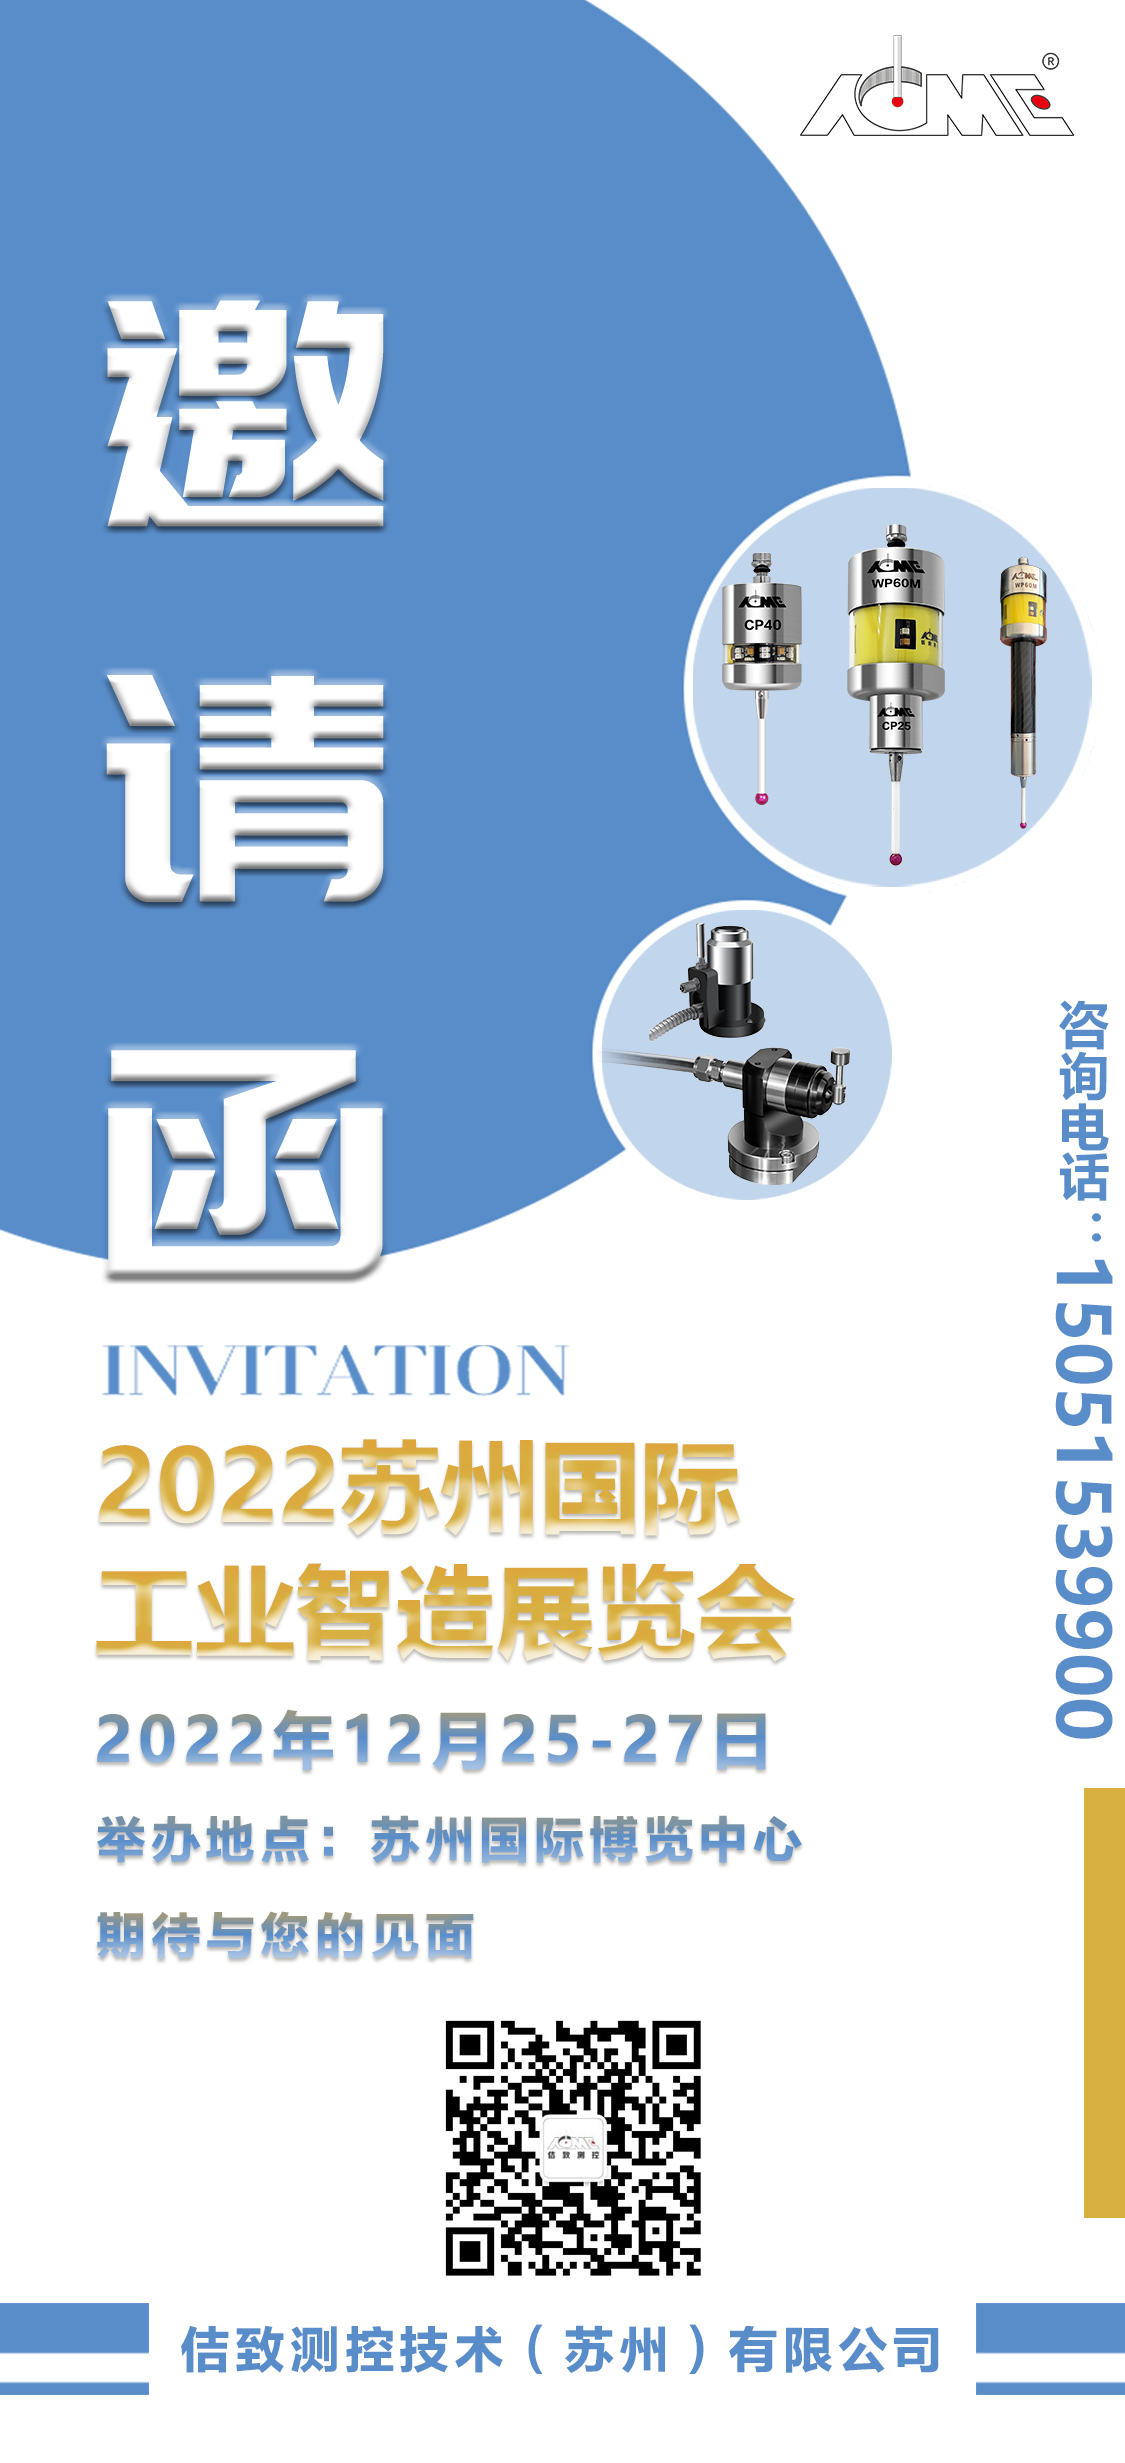 Lettre d'invitation au Salon international de la fabrication intelligente industrielle de Suzhou 2022 (6)